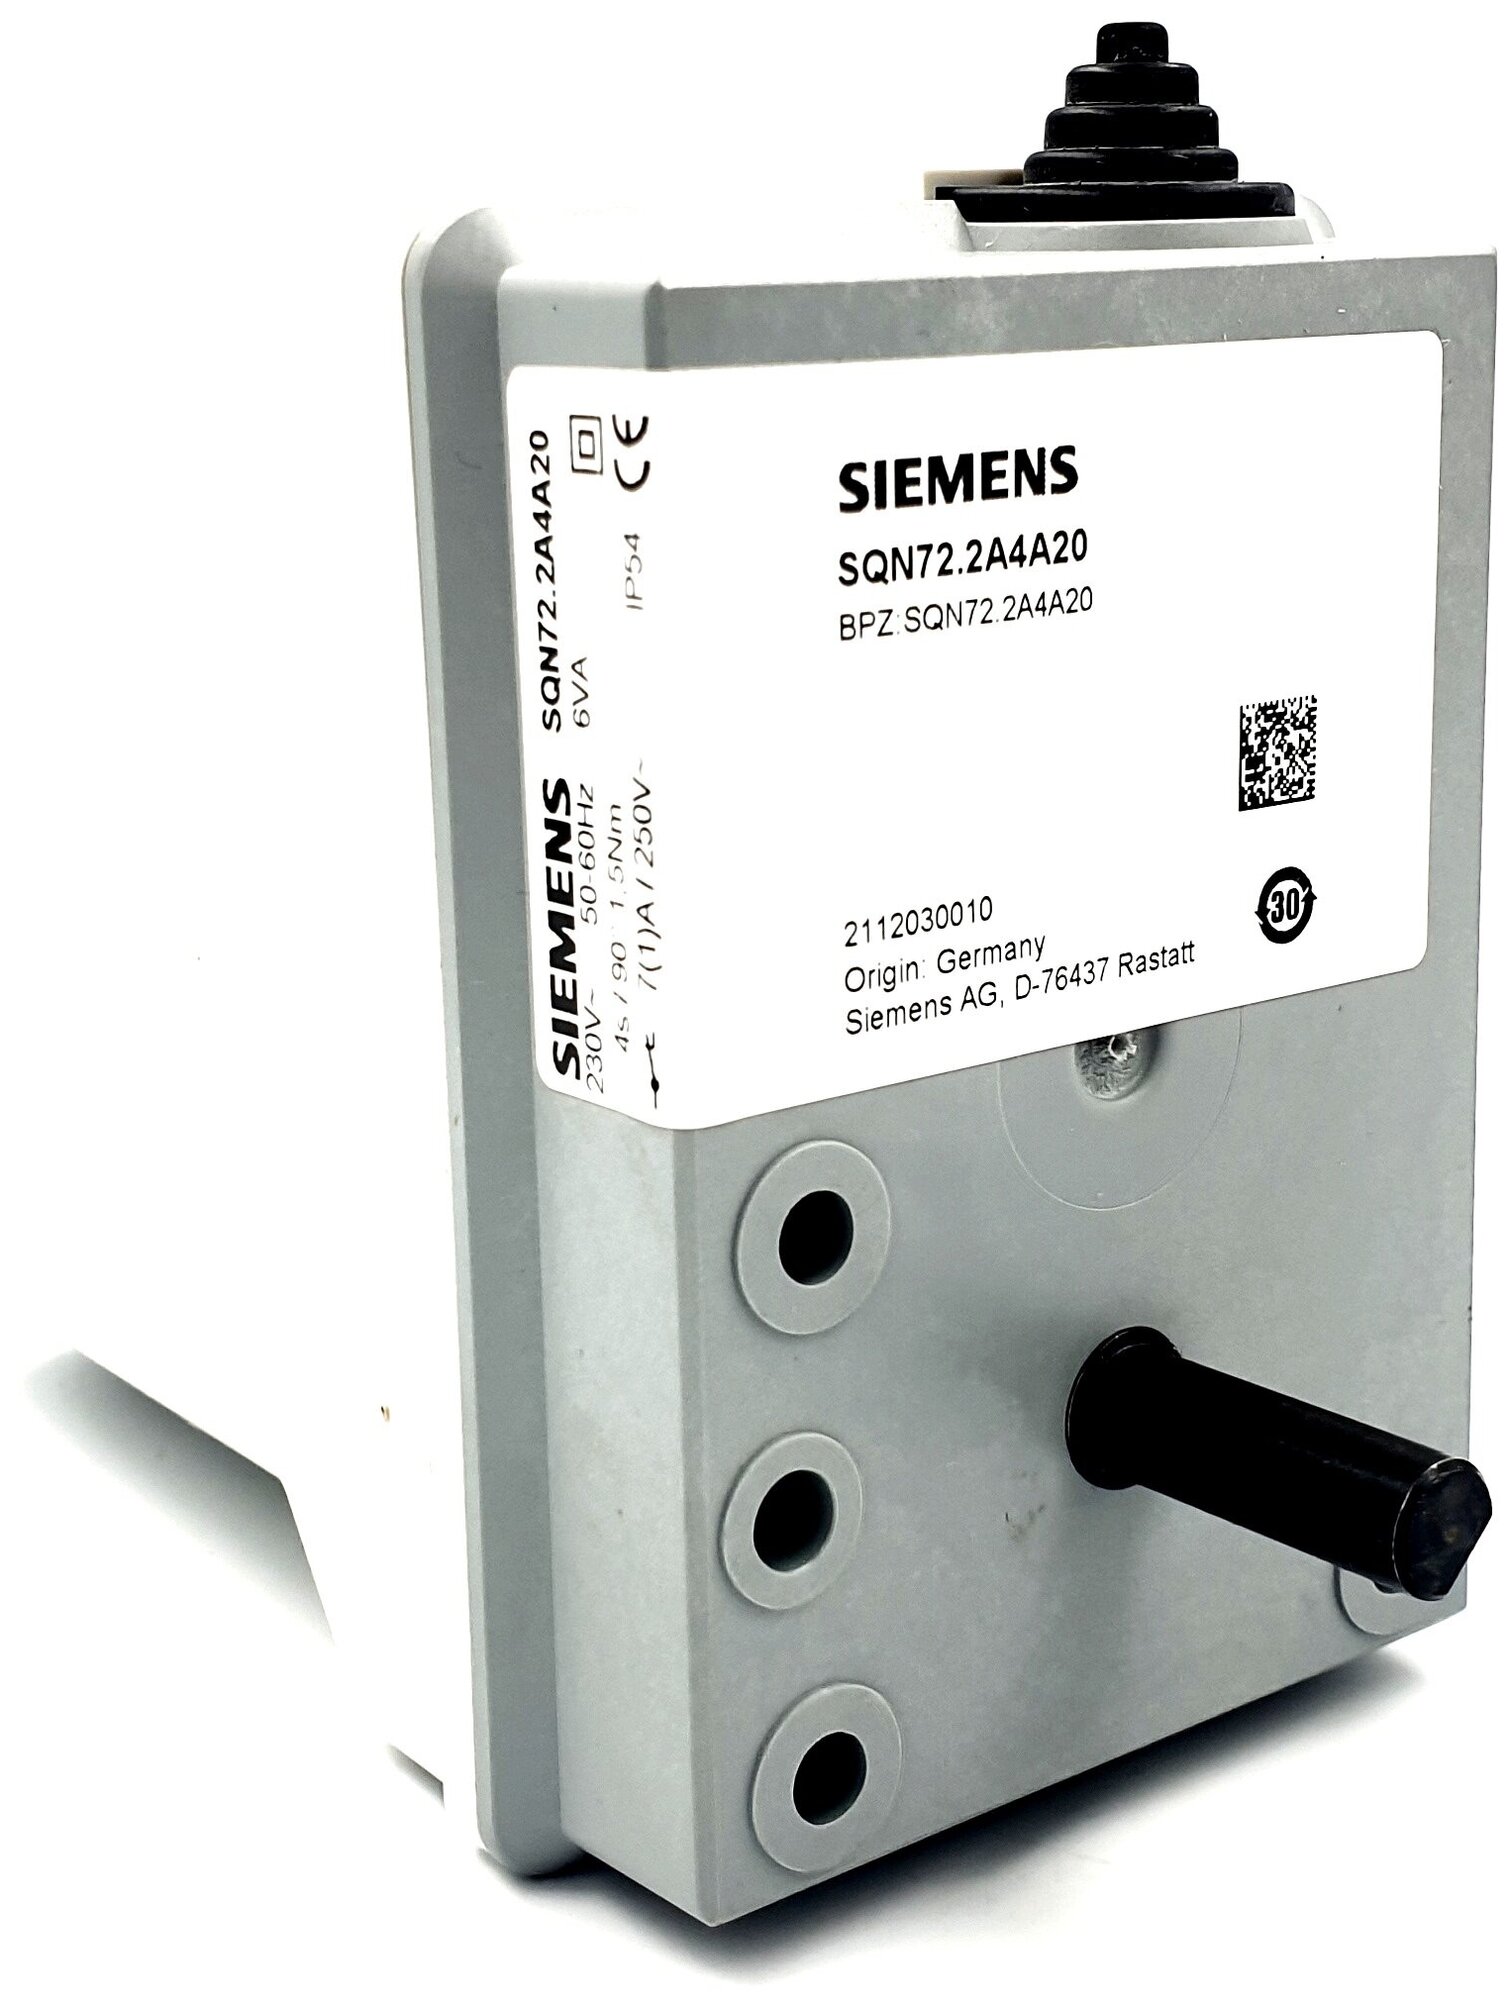 Siemens SQN72.2A4A20 | BPZ: SQN72.2A4A20